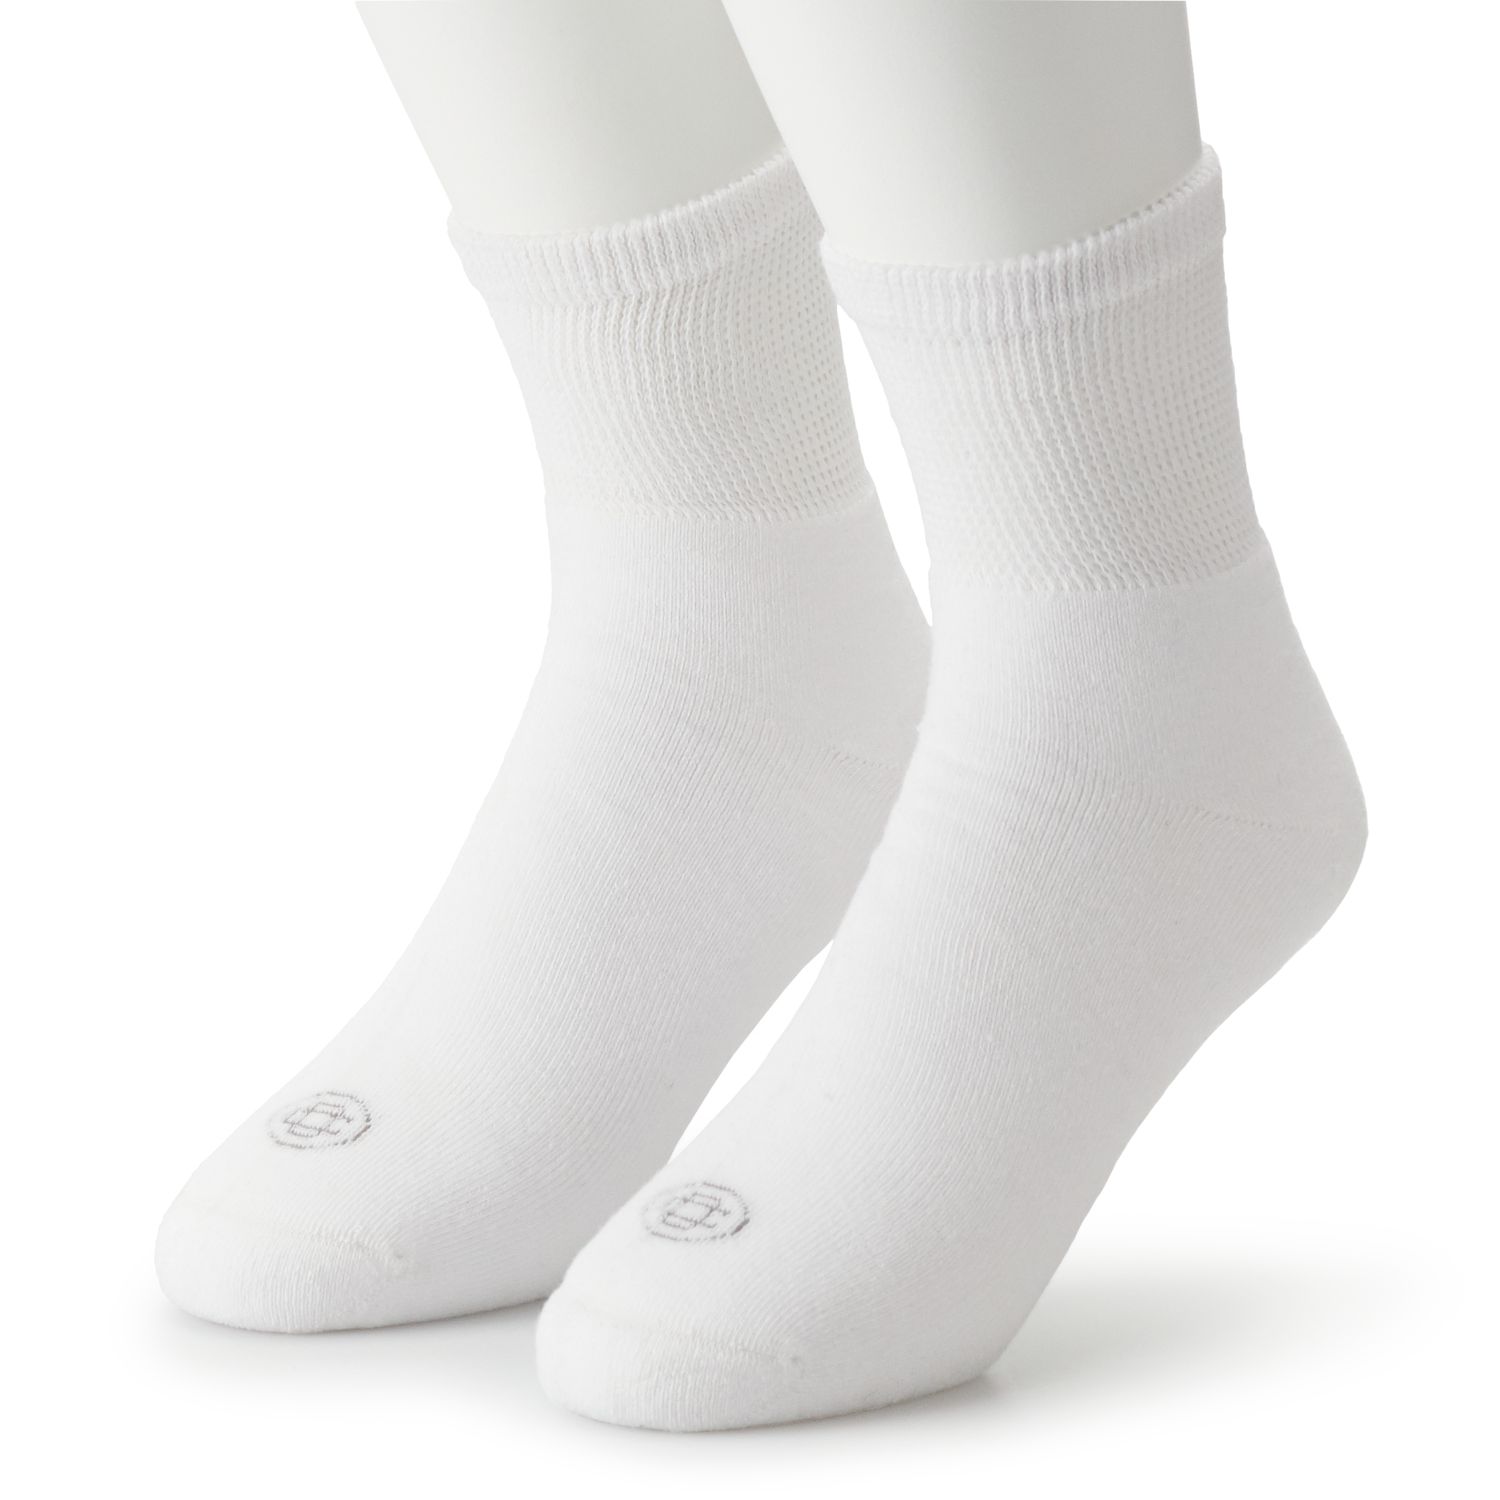 Image for Doctor's Choice Men's 2-pack Diabetic Quarter Socks at Kohl's.